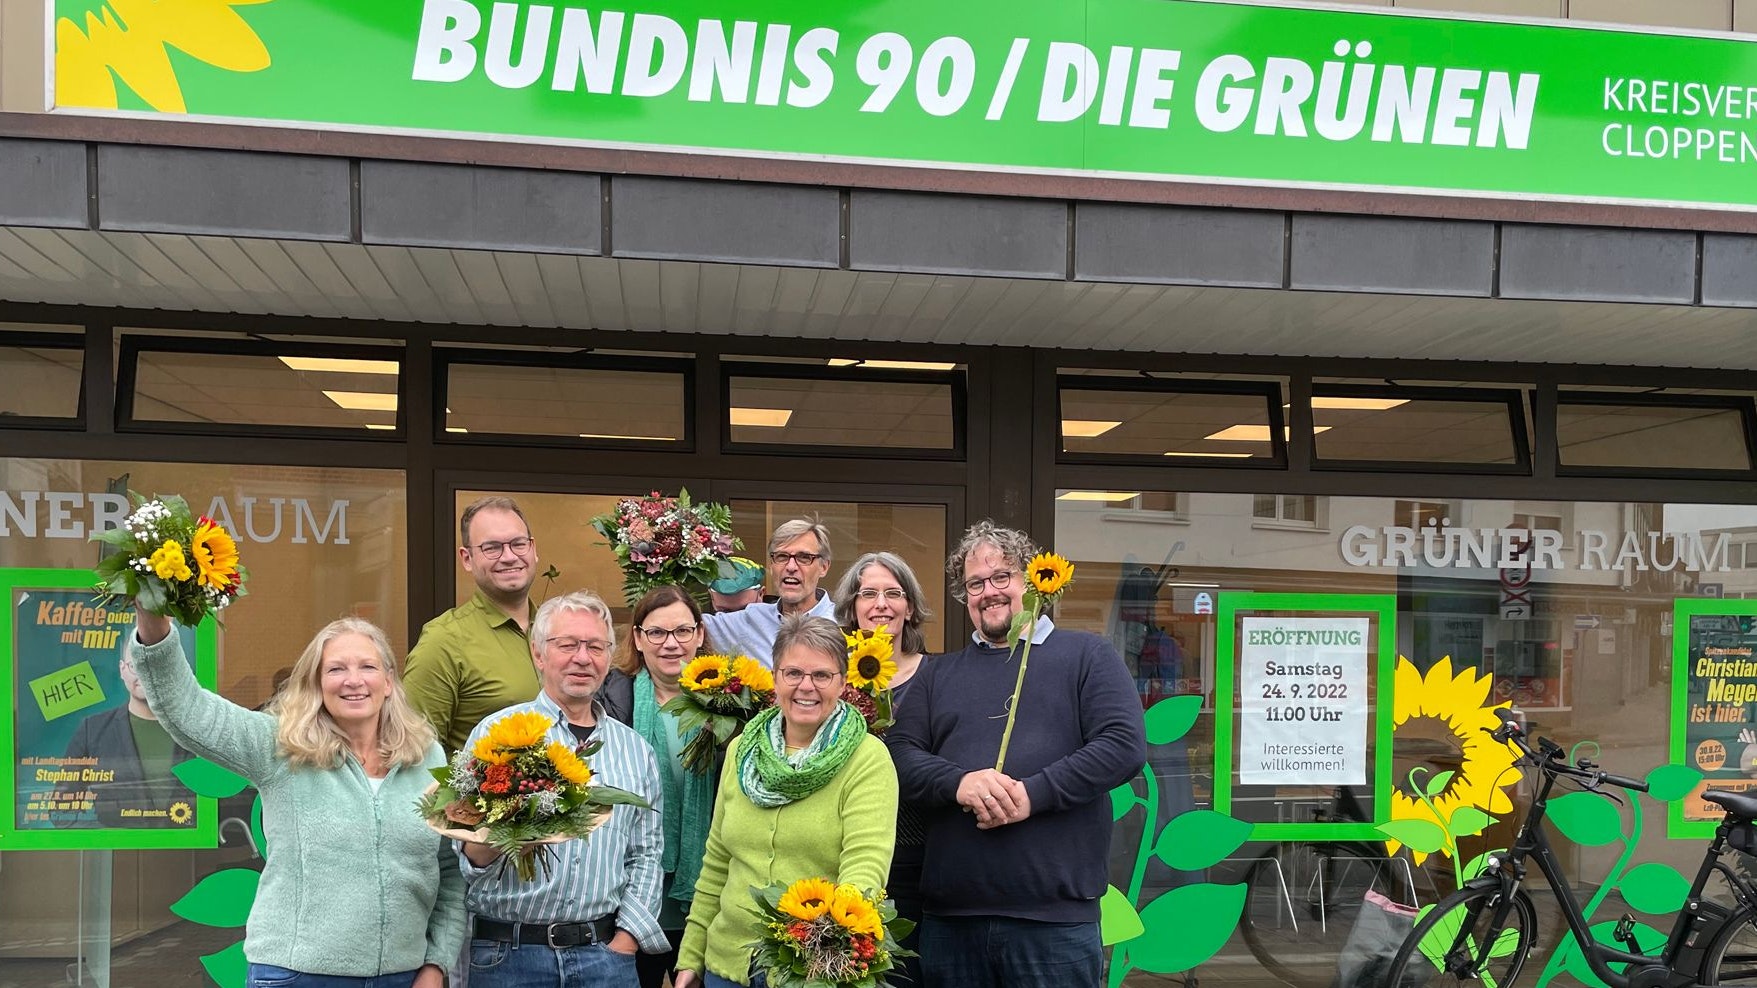 Eröffnung mit Sonnenblumen: Vorstand, Wahlkreiskandidat und Geschäftsführer freuen sich über den „Grünen Raum“. Foto: Dunkel